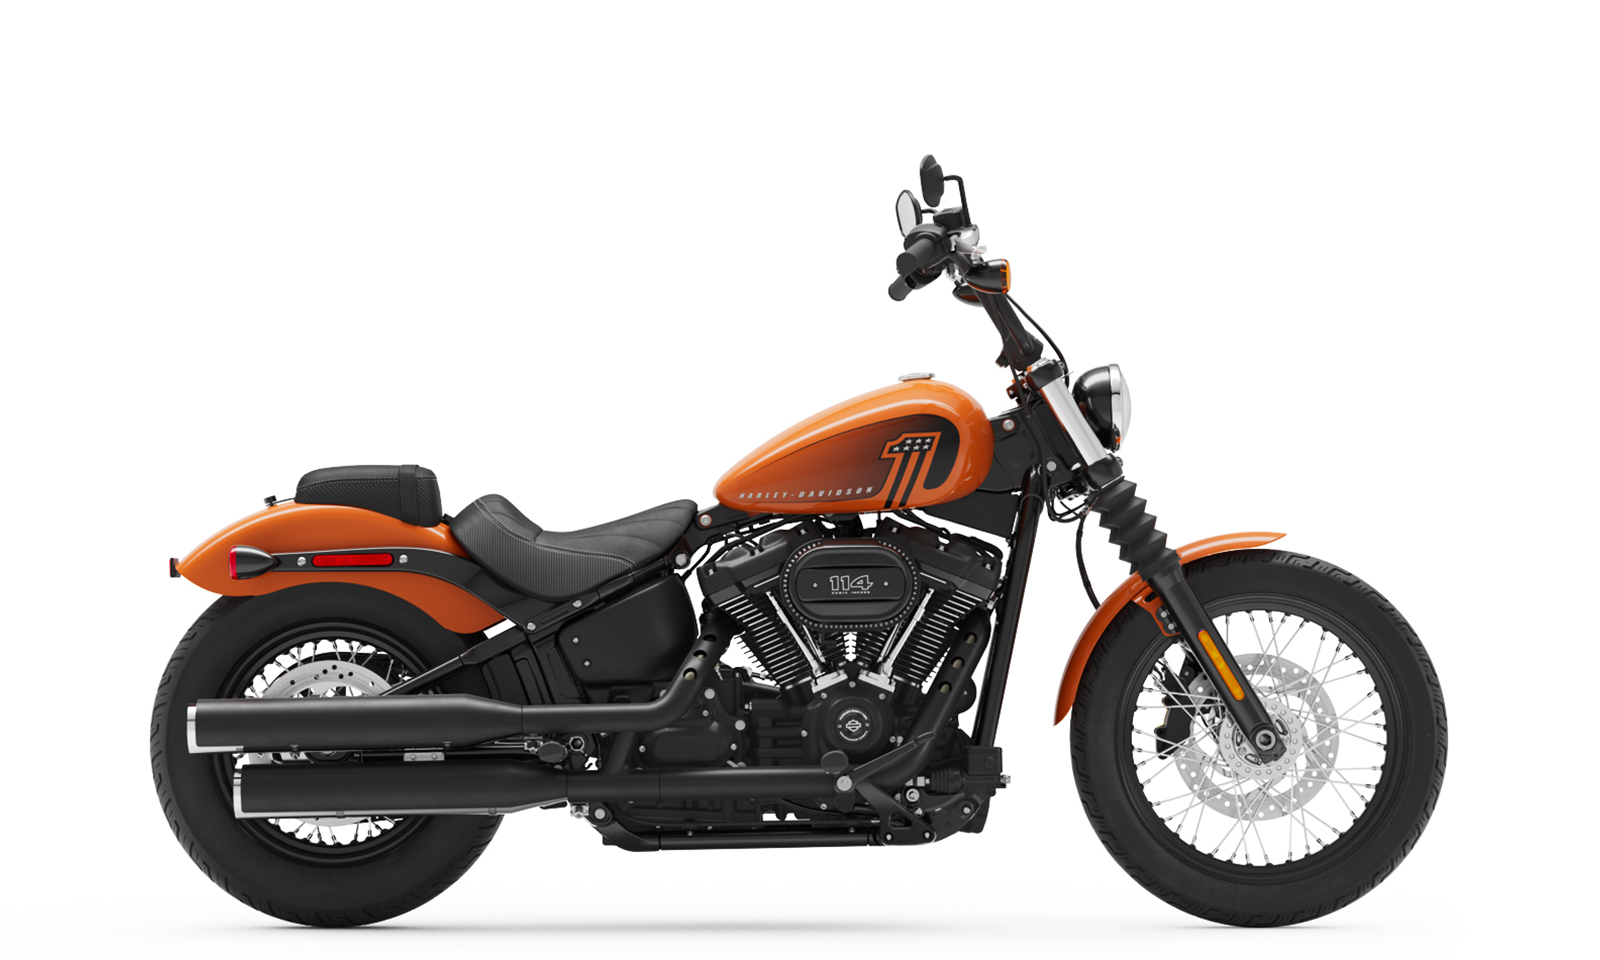 Harley Davidson Finance Rates Promotion Off69